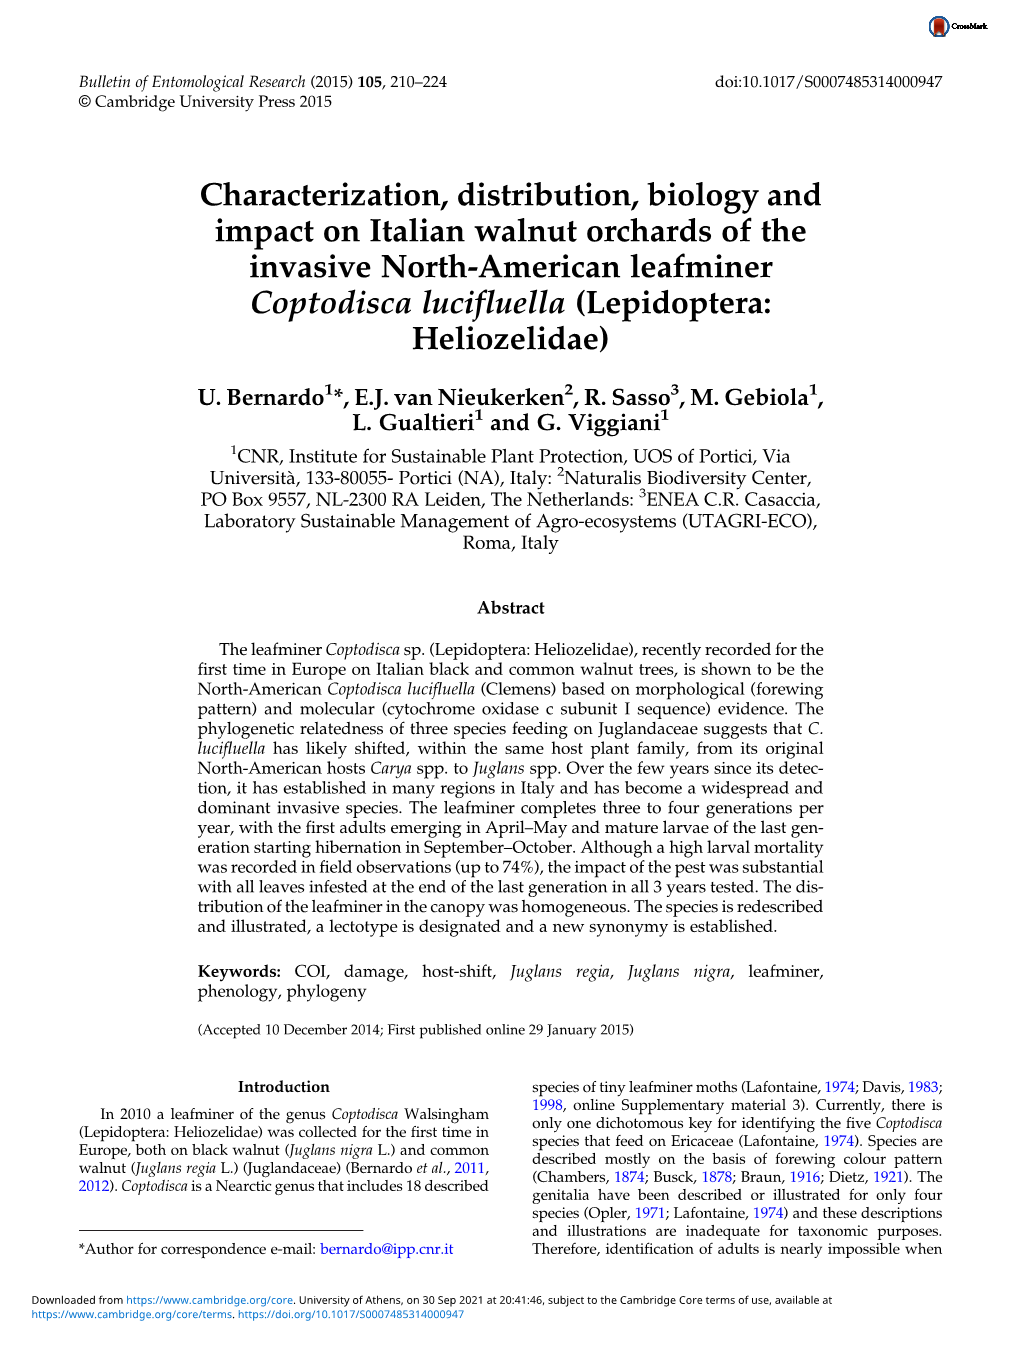 Characterization, Distribution, Biology and Impact on Italian Walnut